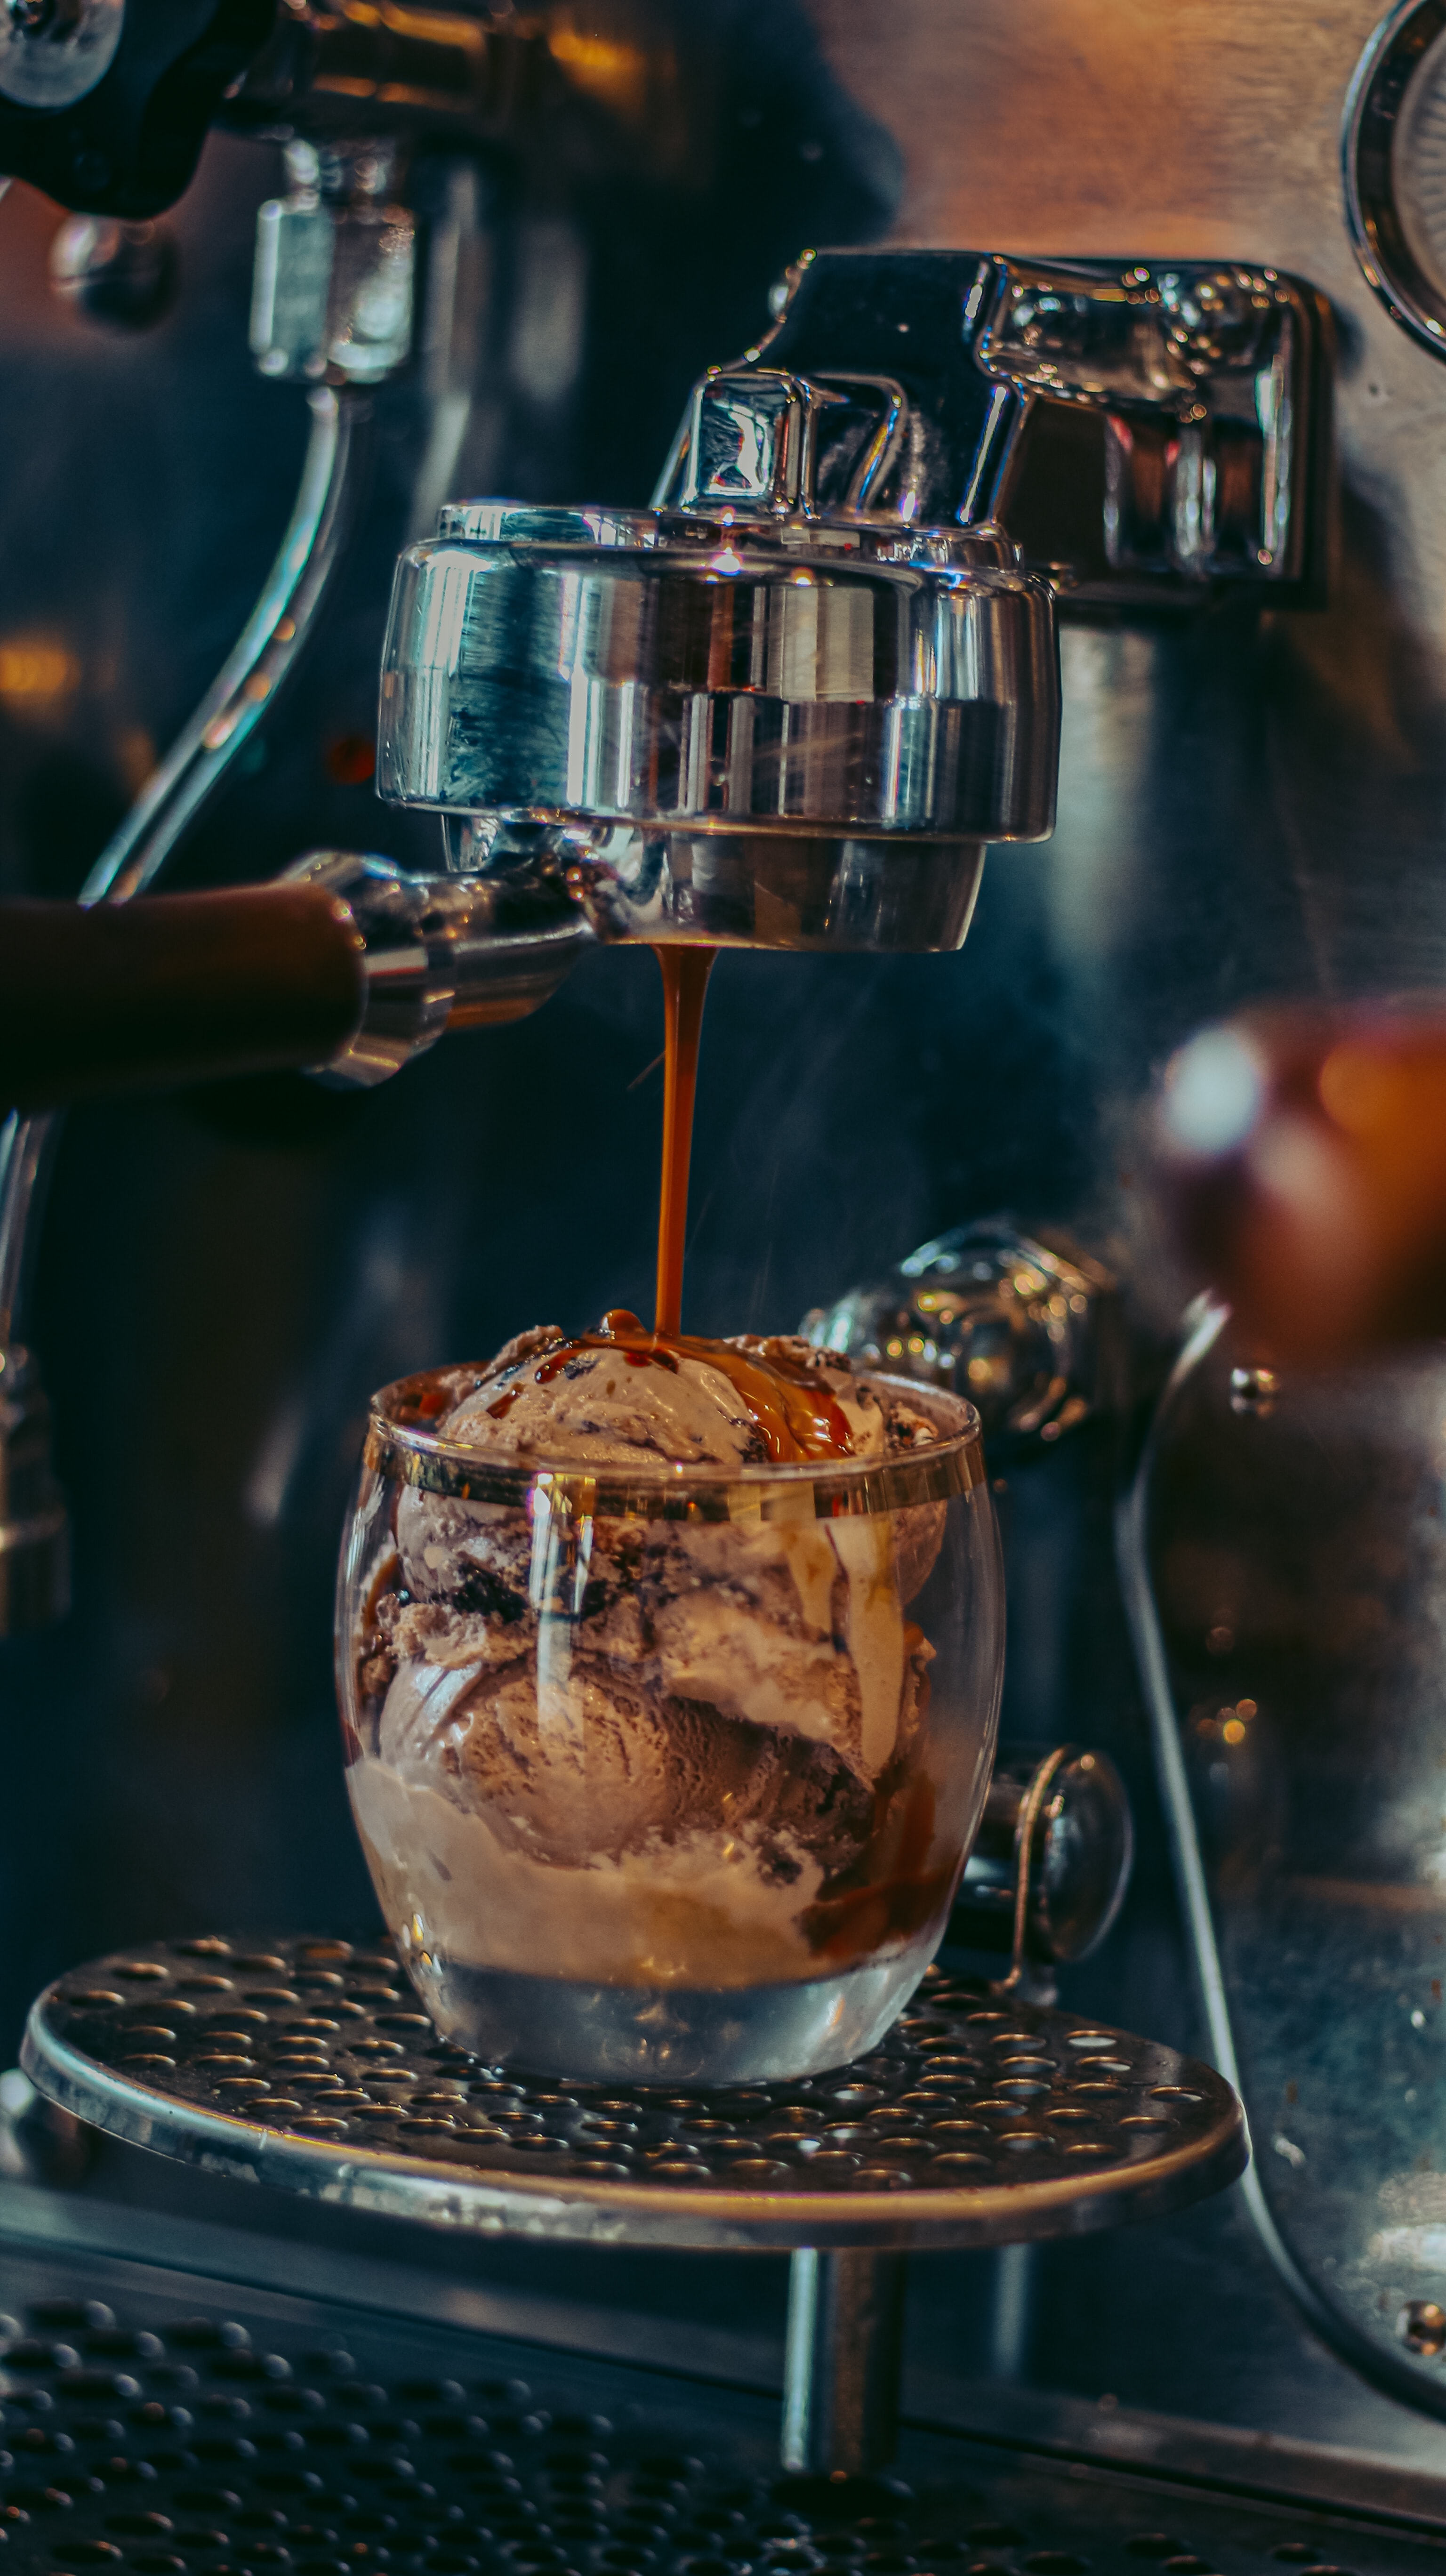 ice cream, coffee machine, food, desert, coffee, cup, mug